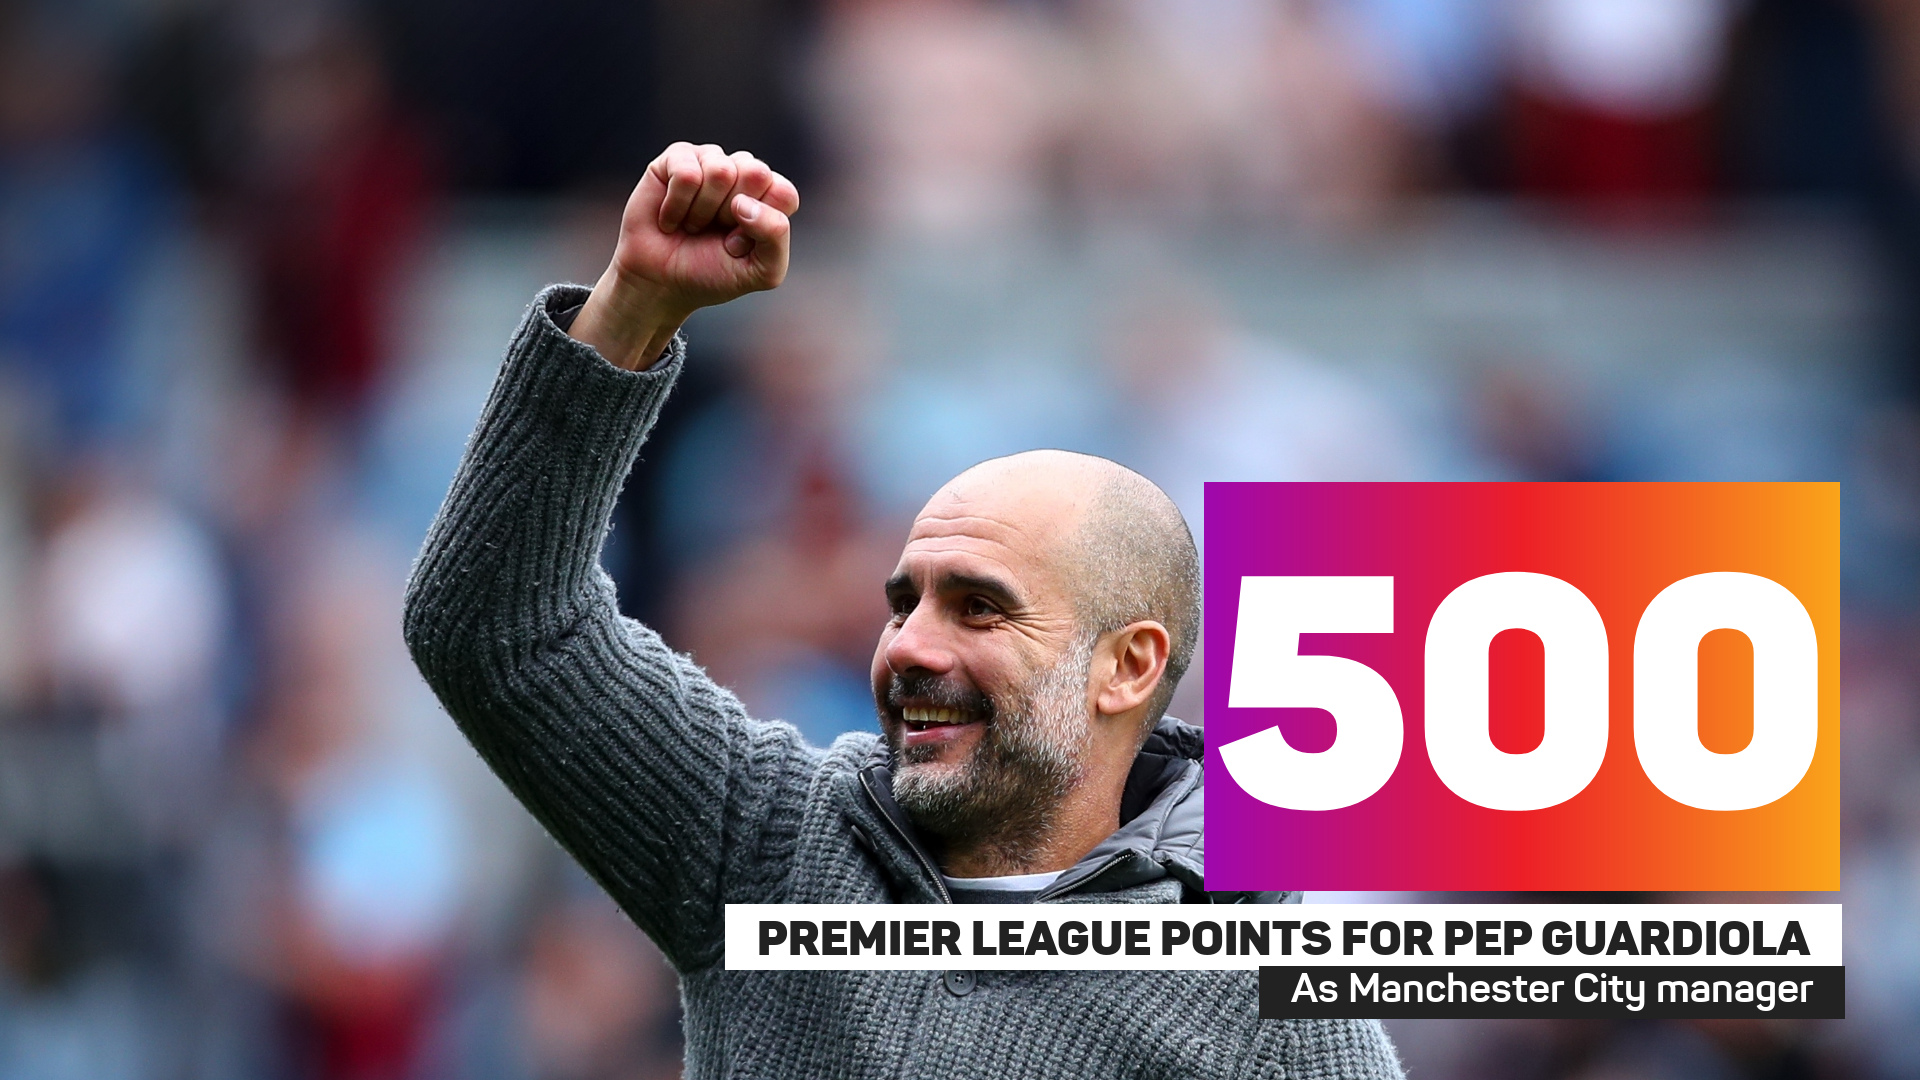 Pep Guardiola has 500 Premier League points